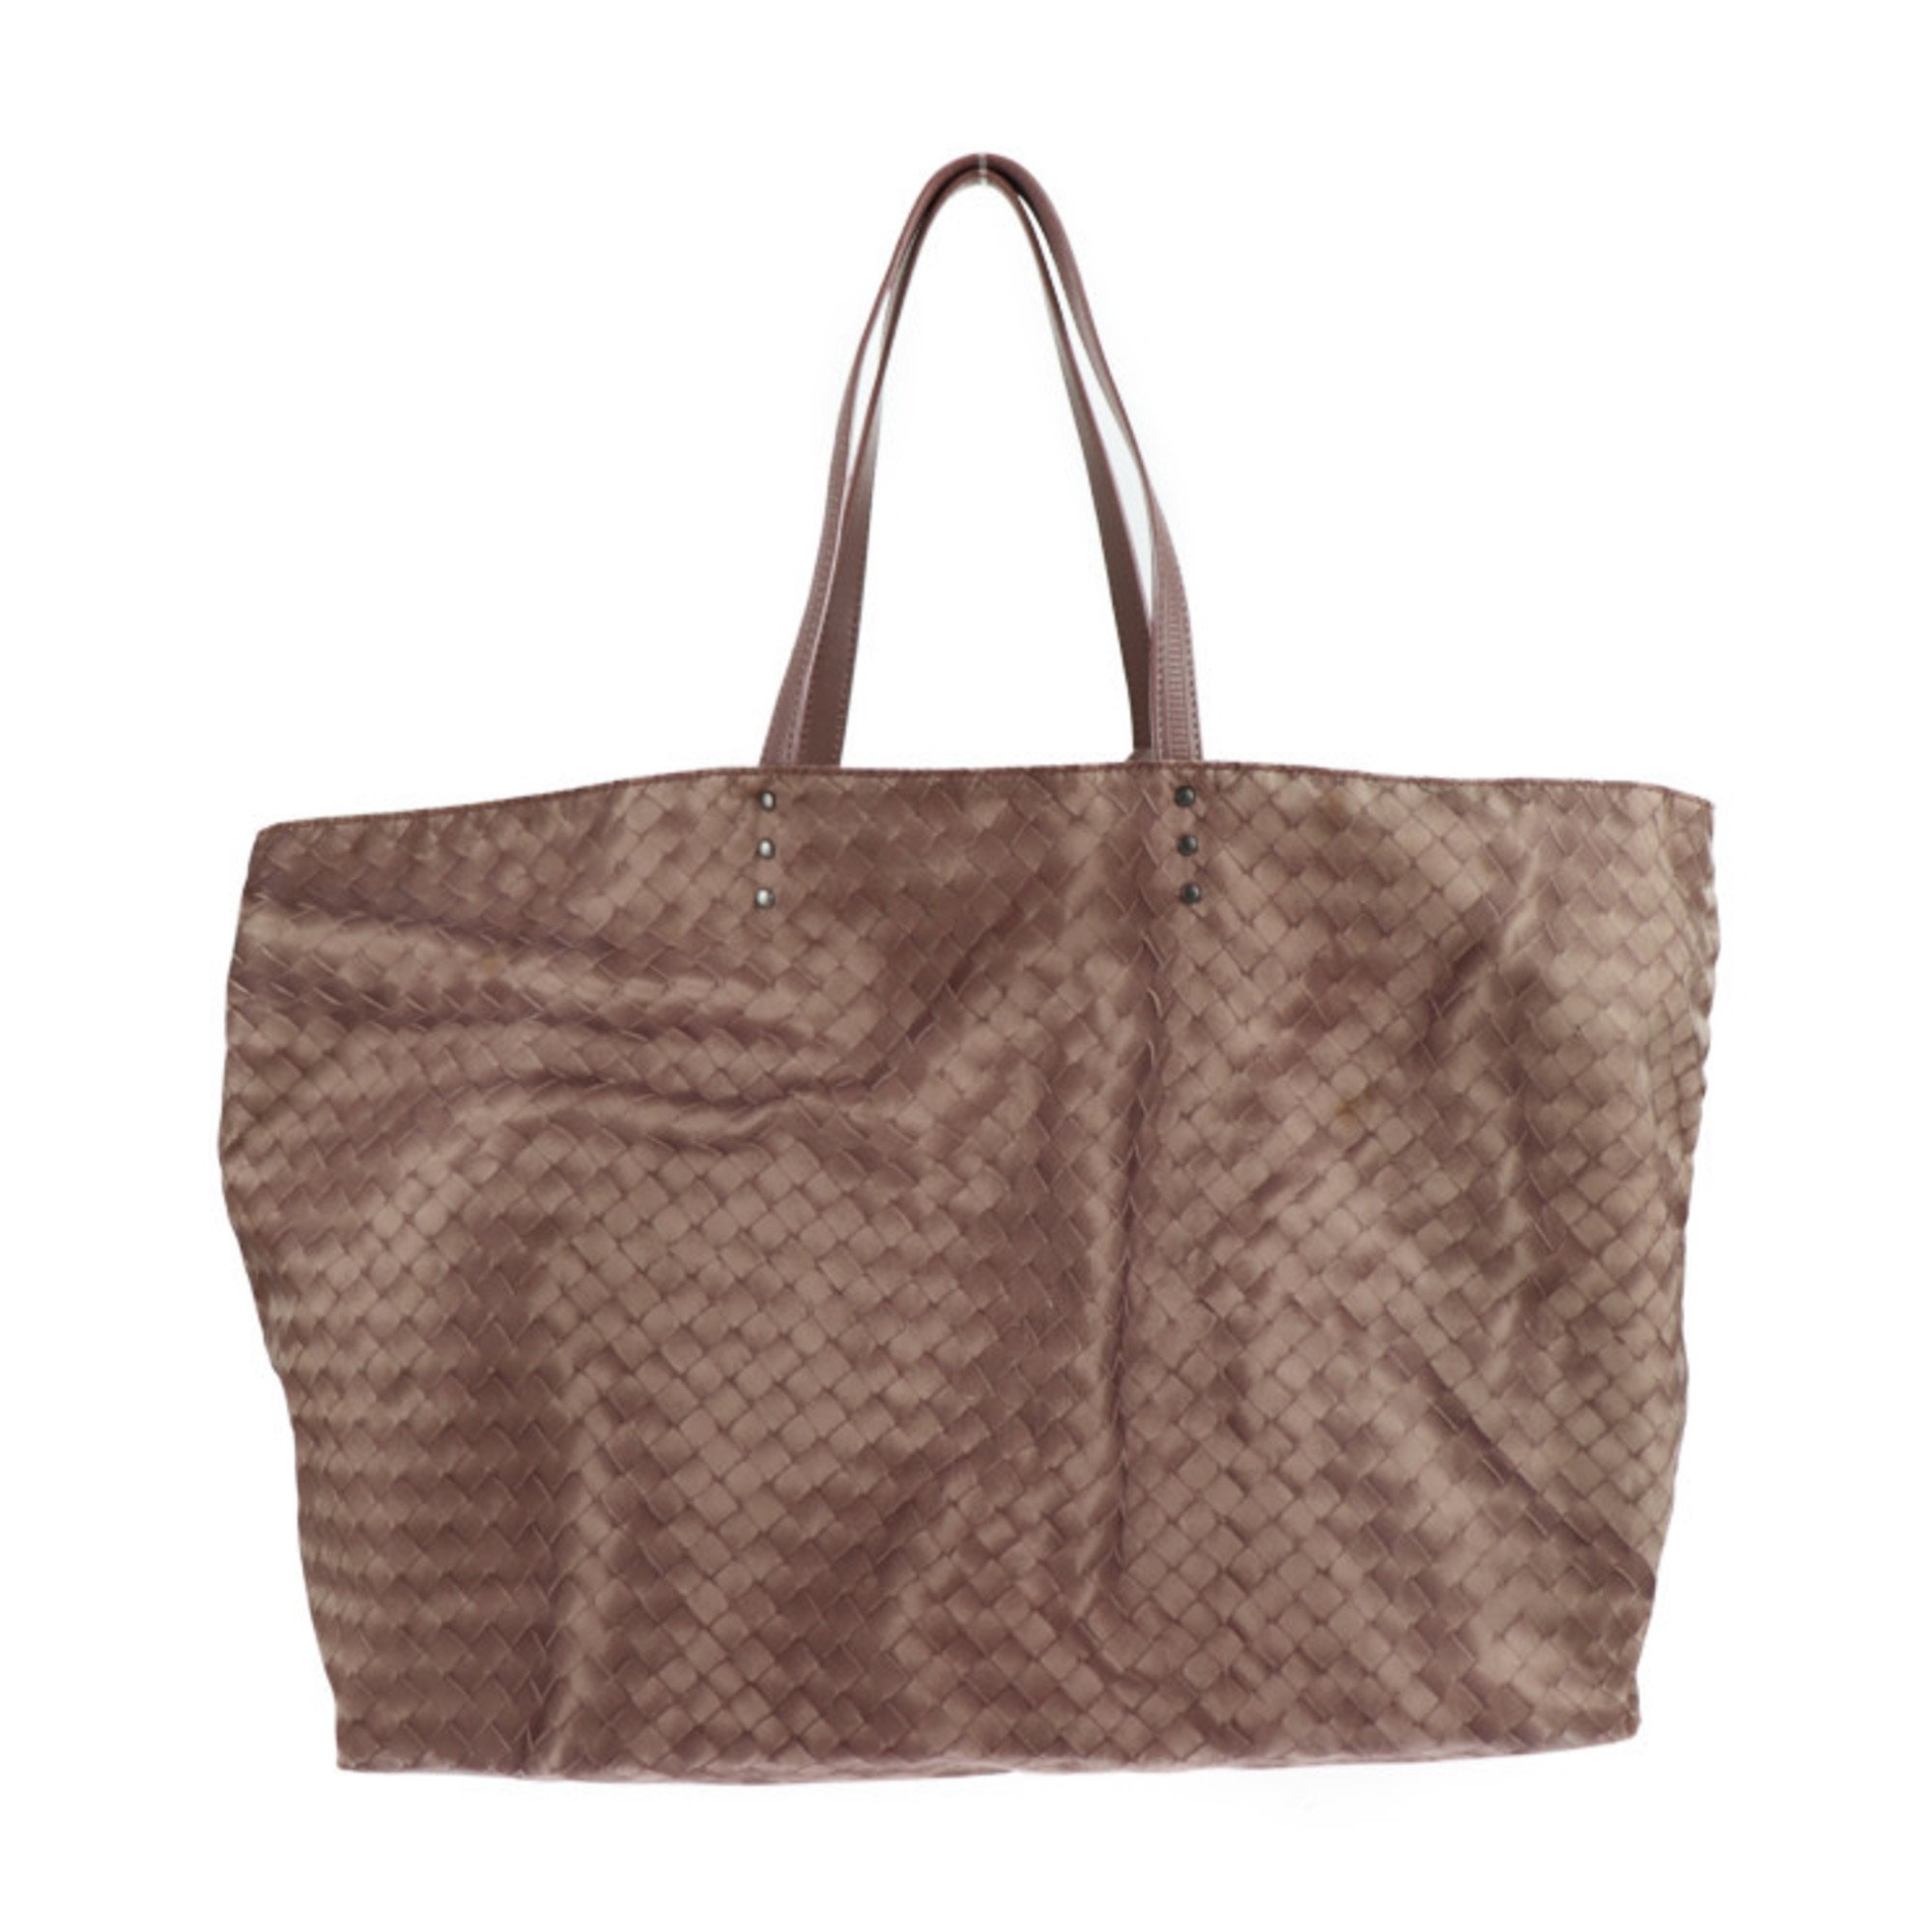 BOTTEGA VENETA Intreccio illusion tote bag 299876 nylon leather dark pink beige handbag